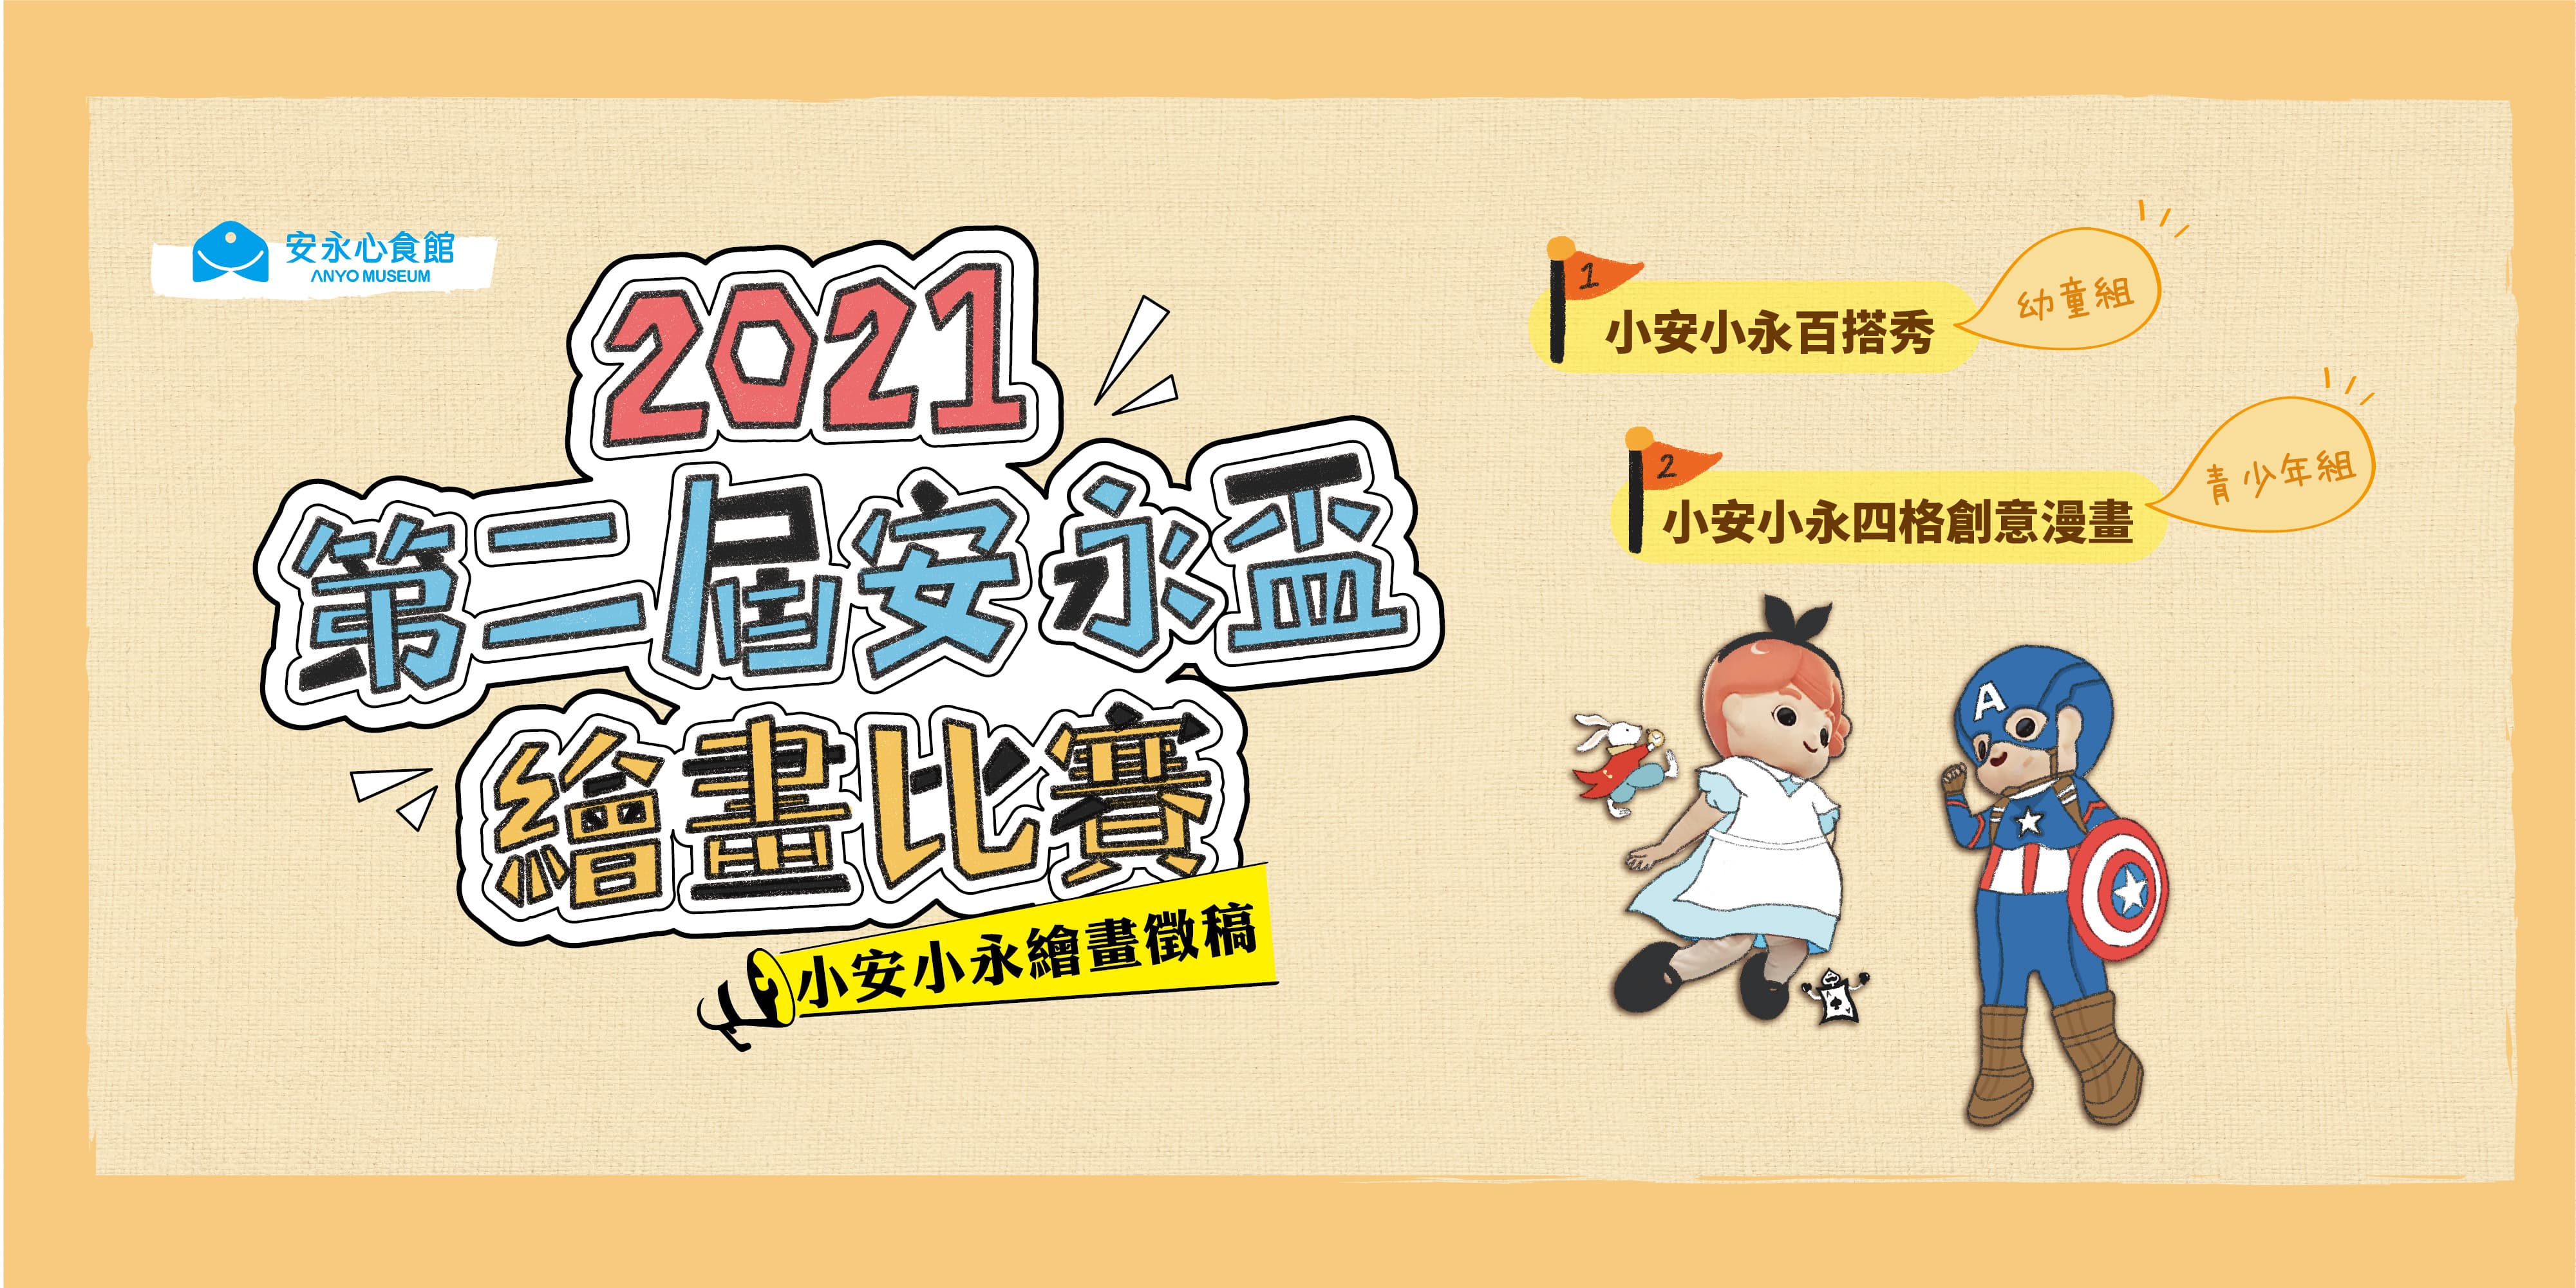 2021第二屆安永盃繪畫比賽 官網banner